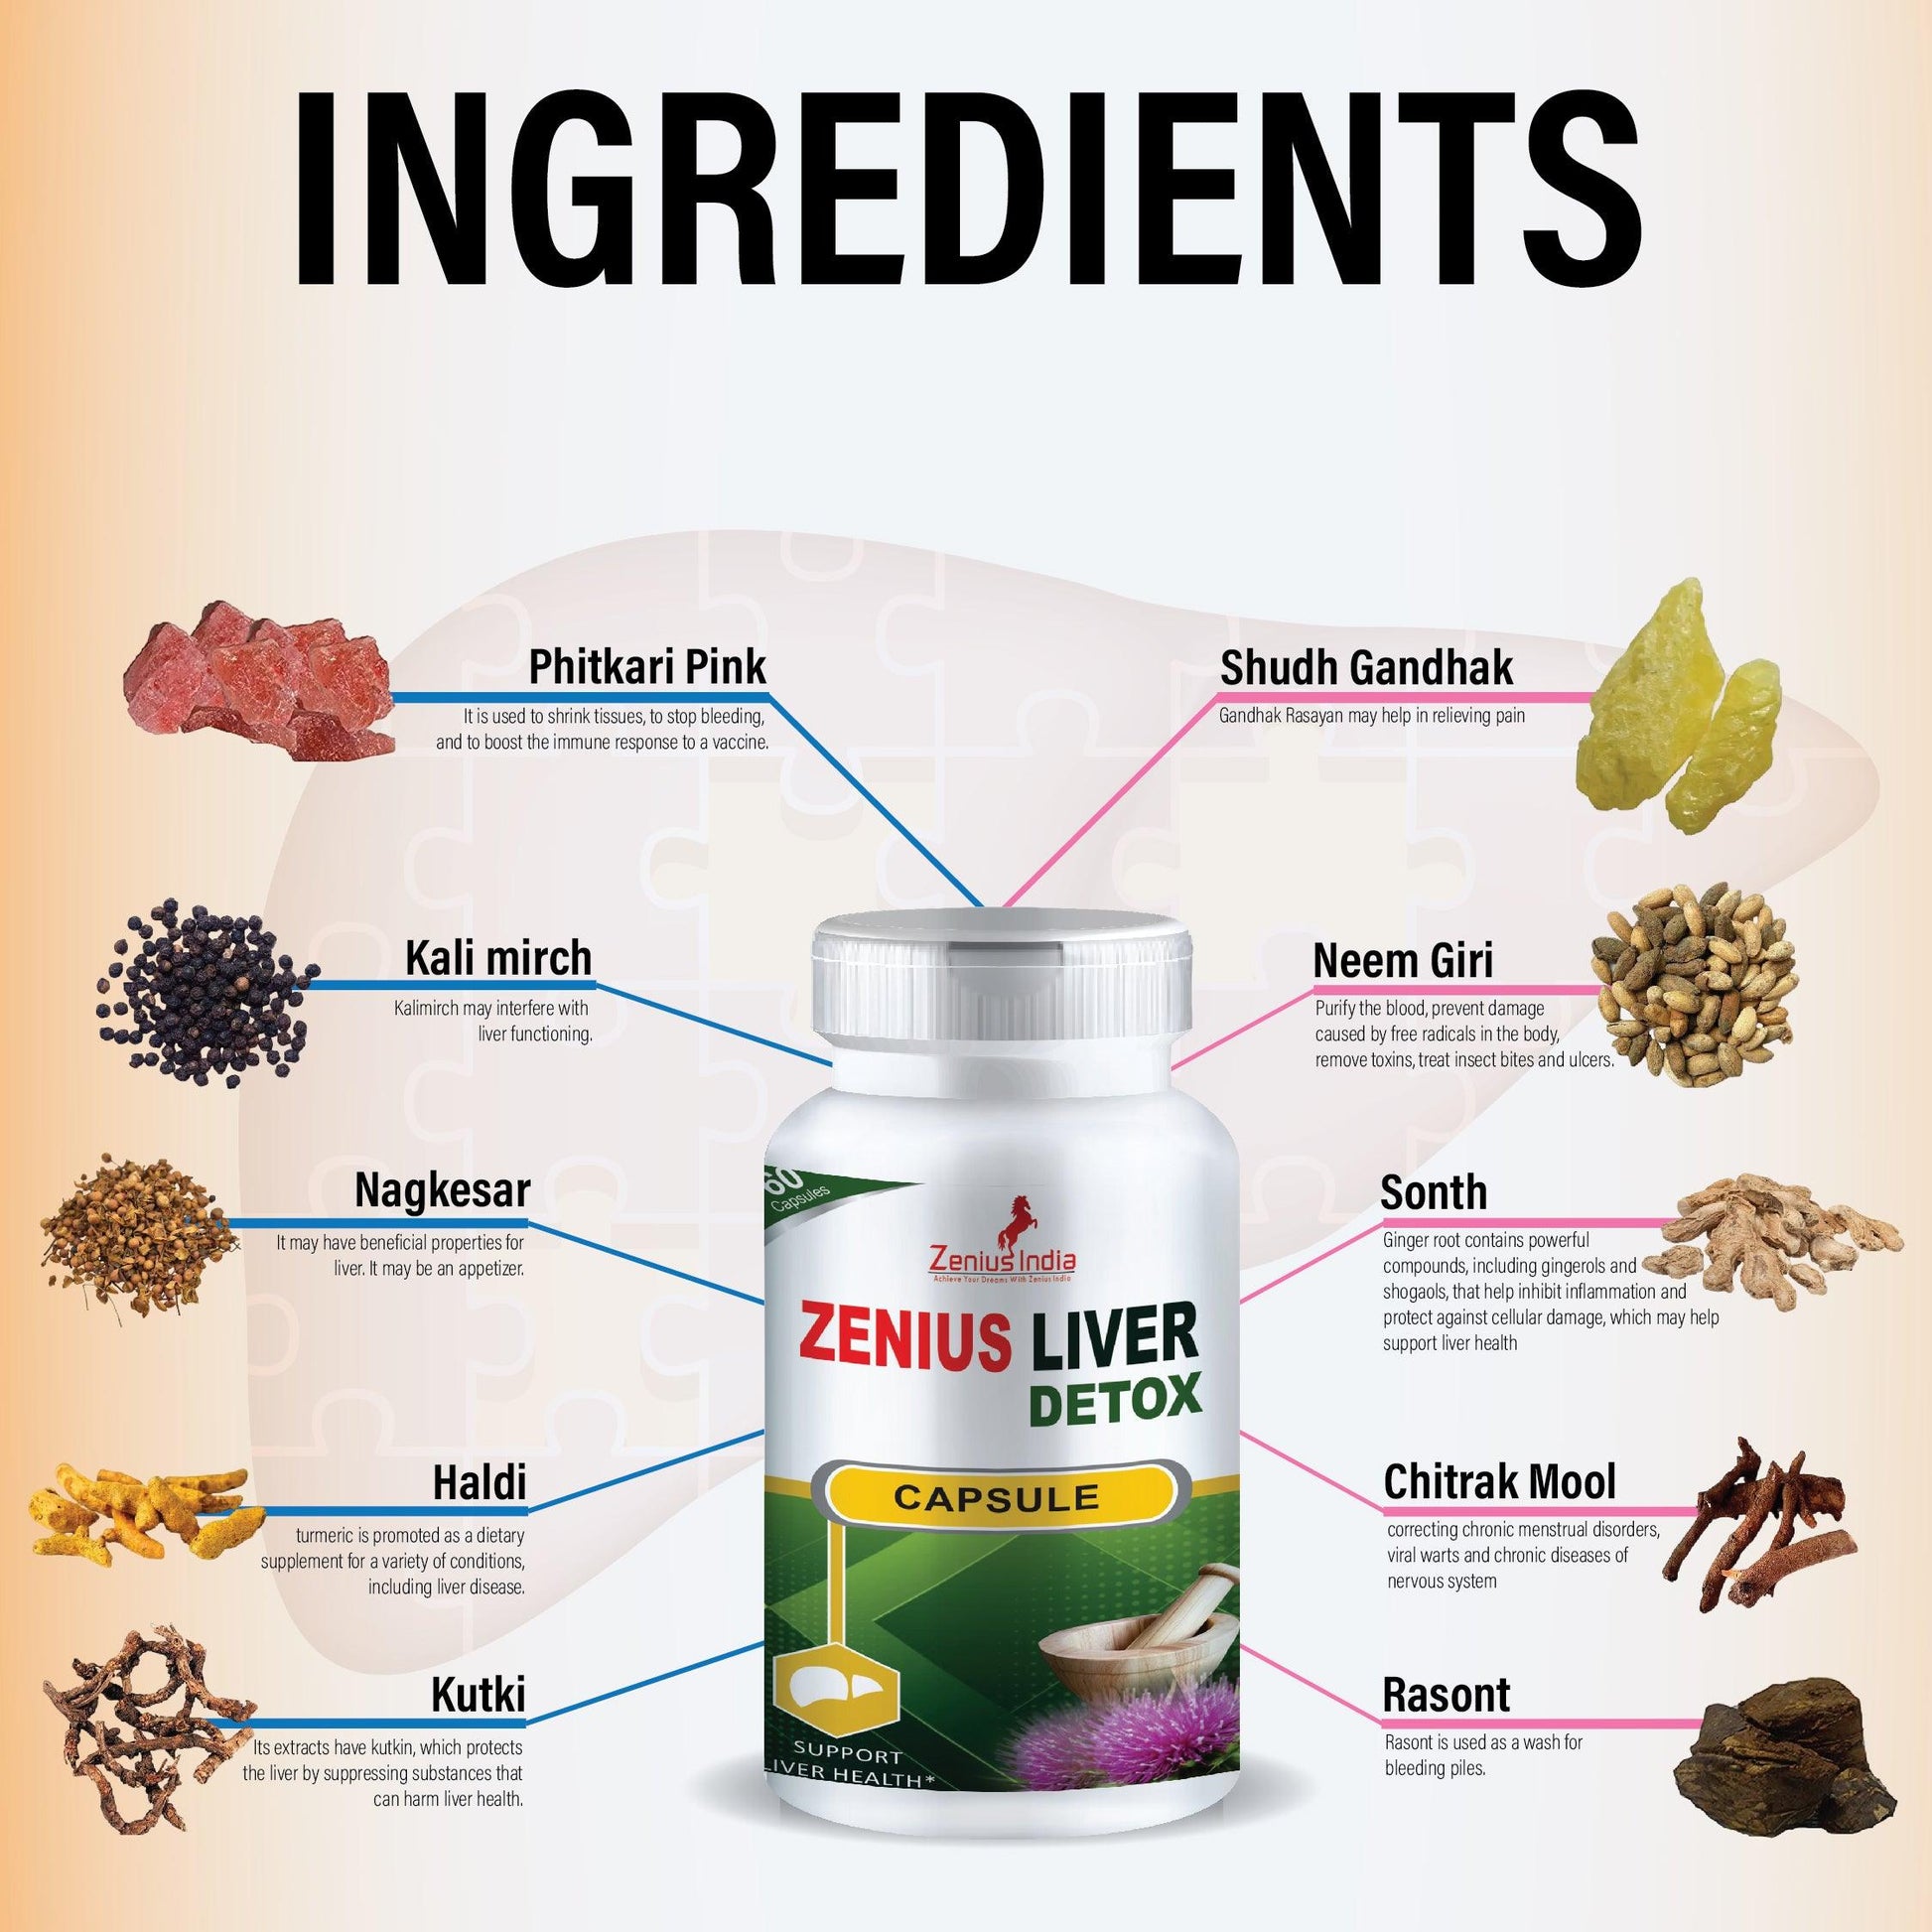 Zenius Liver Detox Casule for Liver Treatment Capsule | Liver Health Supplements - 60 Capsules Zenius India